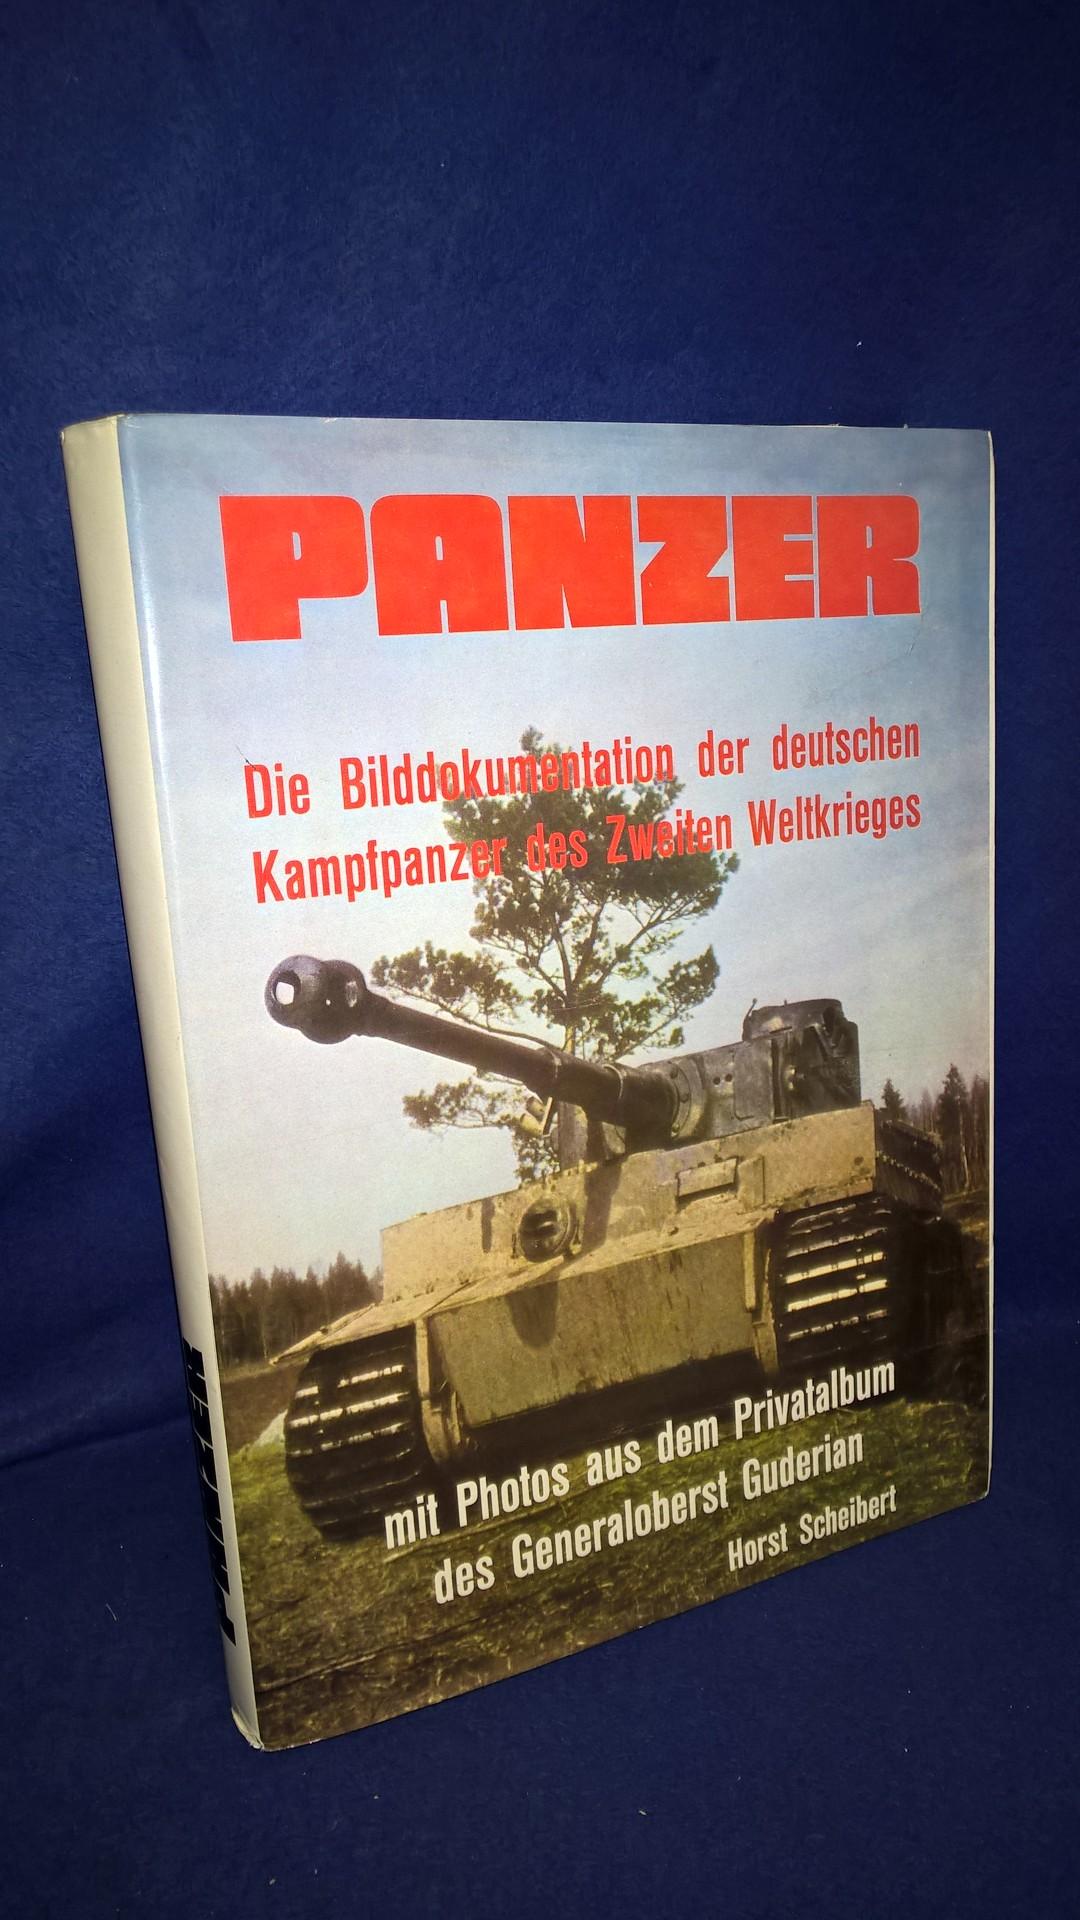 Panzer - Die Bilddokumentation der deutschen Kampfpanzer des Zweiten Weltkrieges mit Photos aus dem Privatalbum des Generaloberst Guderian.